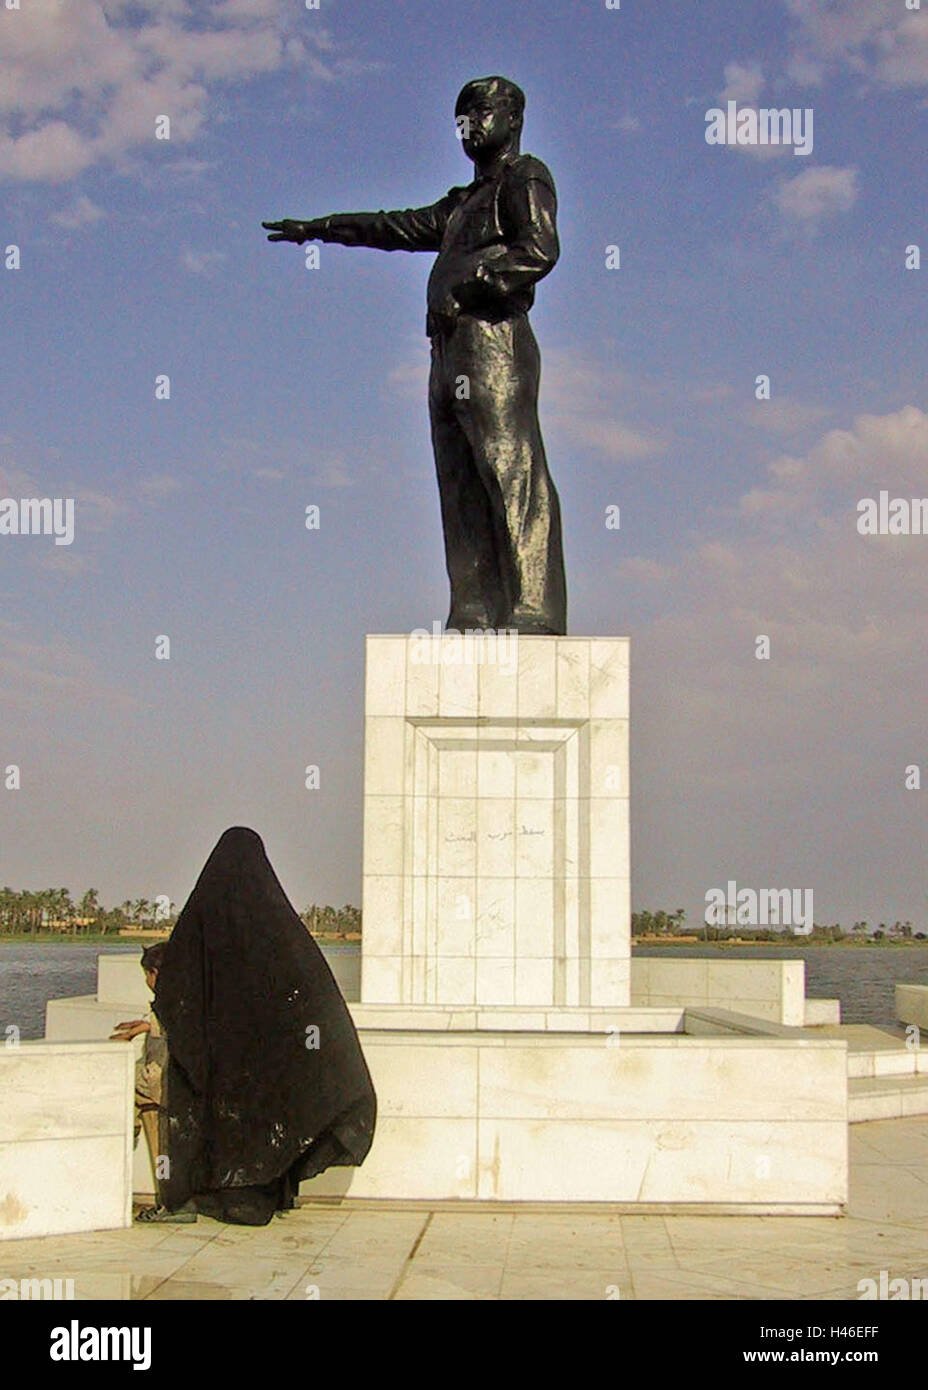 13 avril 2003 une femme irakienne se distingue avec son enfant en dessous d'une statue de Saddam Hussein dirigé vers l'Iran sur le Chatt al-Arab à Bassorah. Banque D'Images